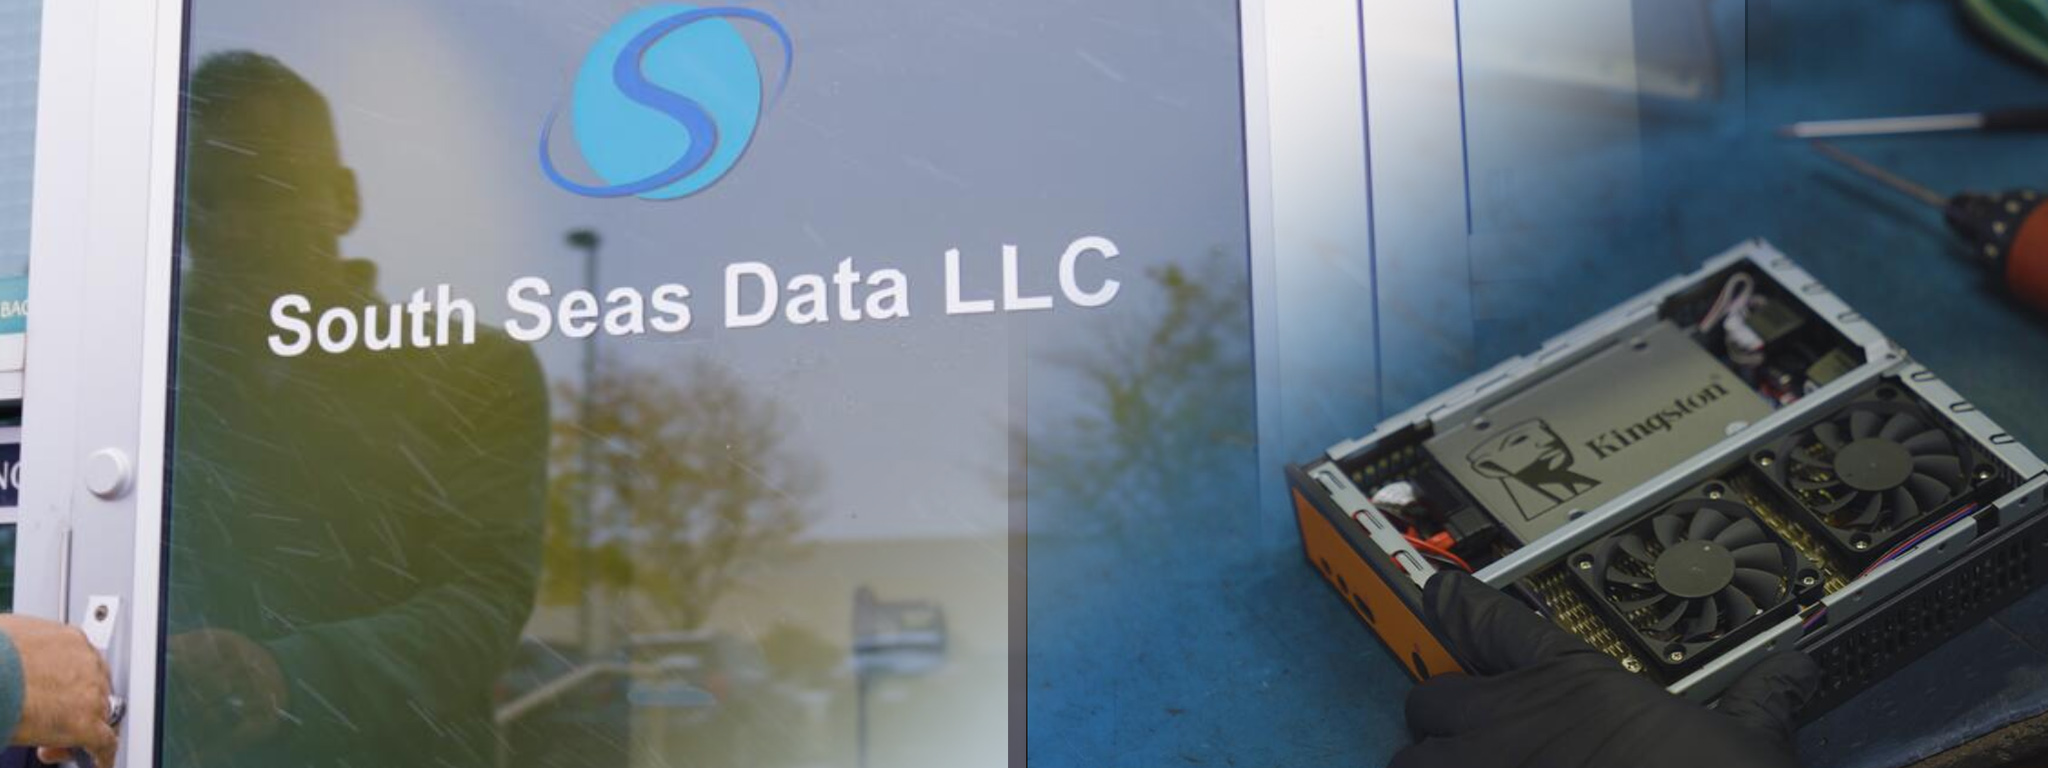 South Seas Data LLC 本社の玄関の画像に重ねるように、Kingston SSD が目立つように設置されたシステムの画像